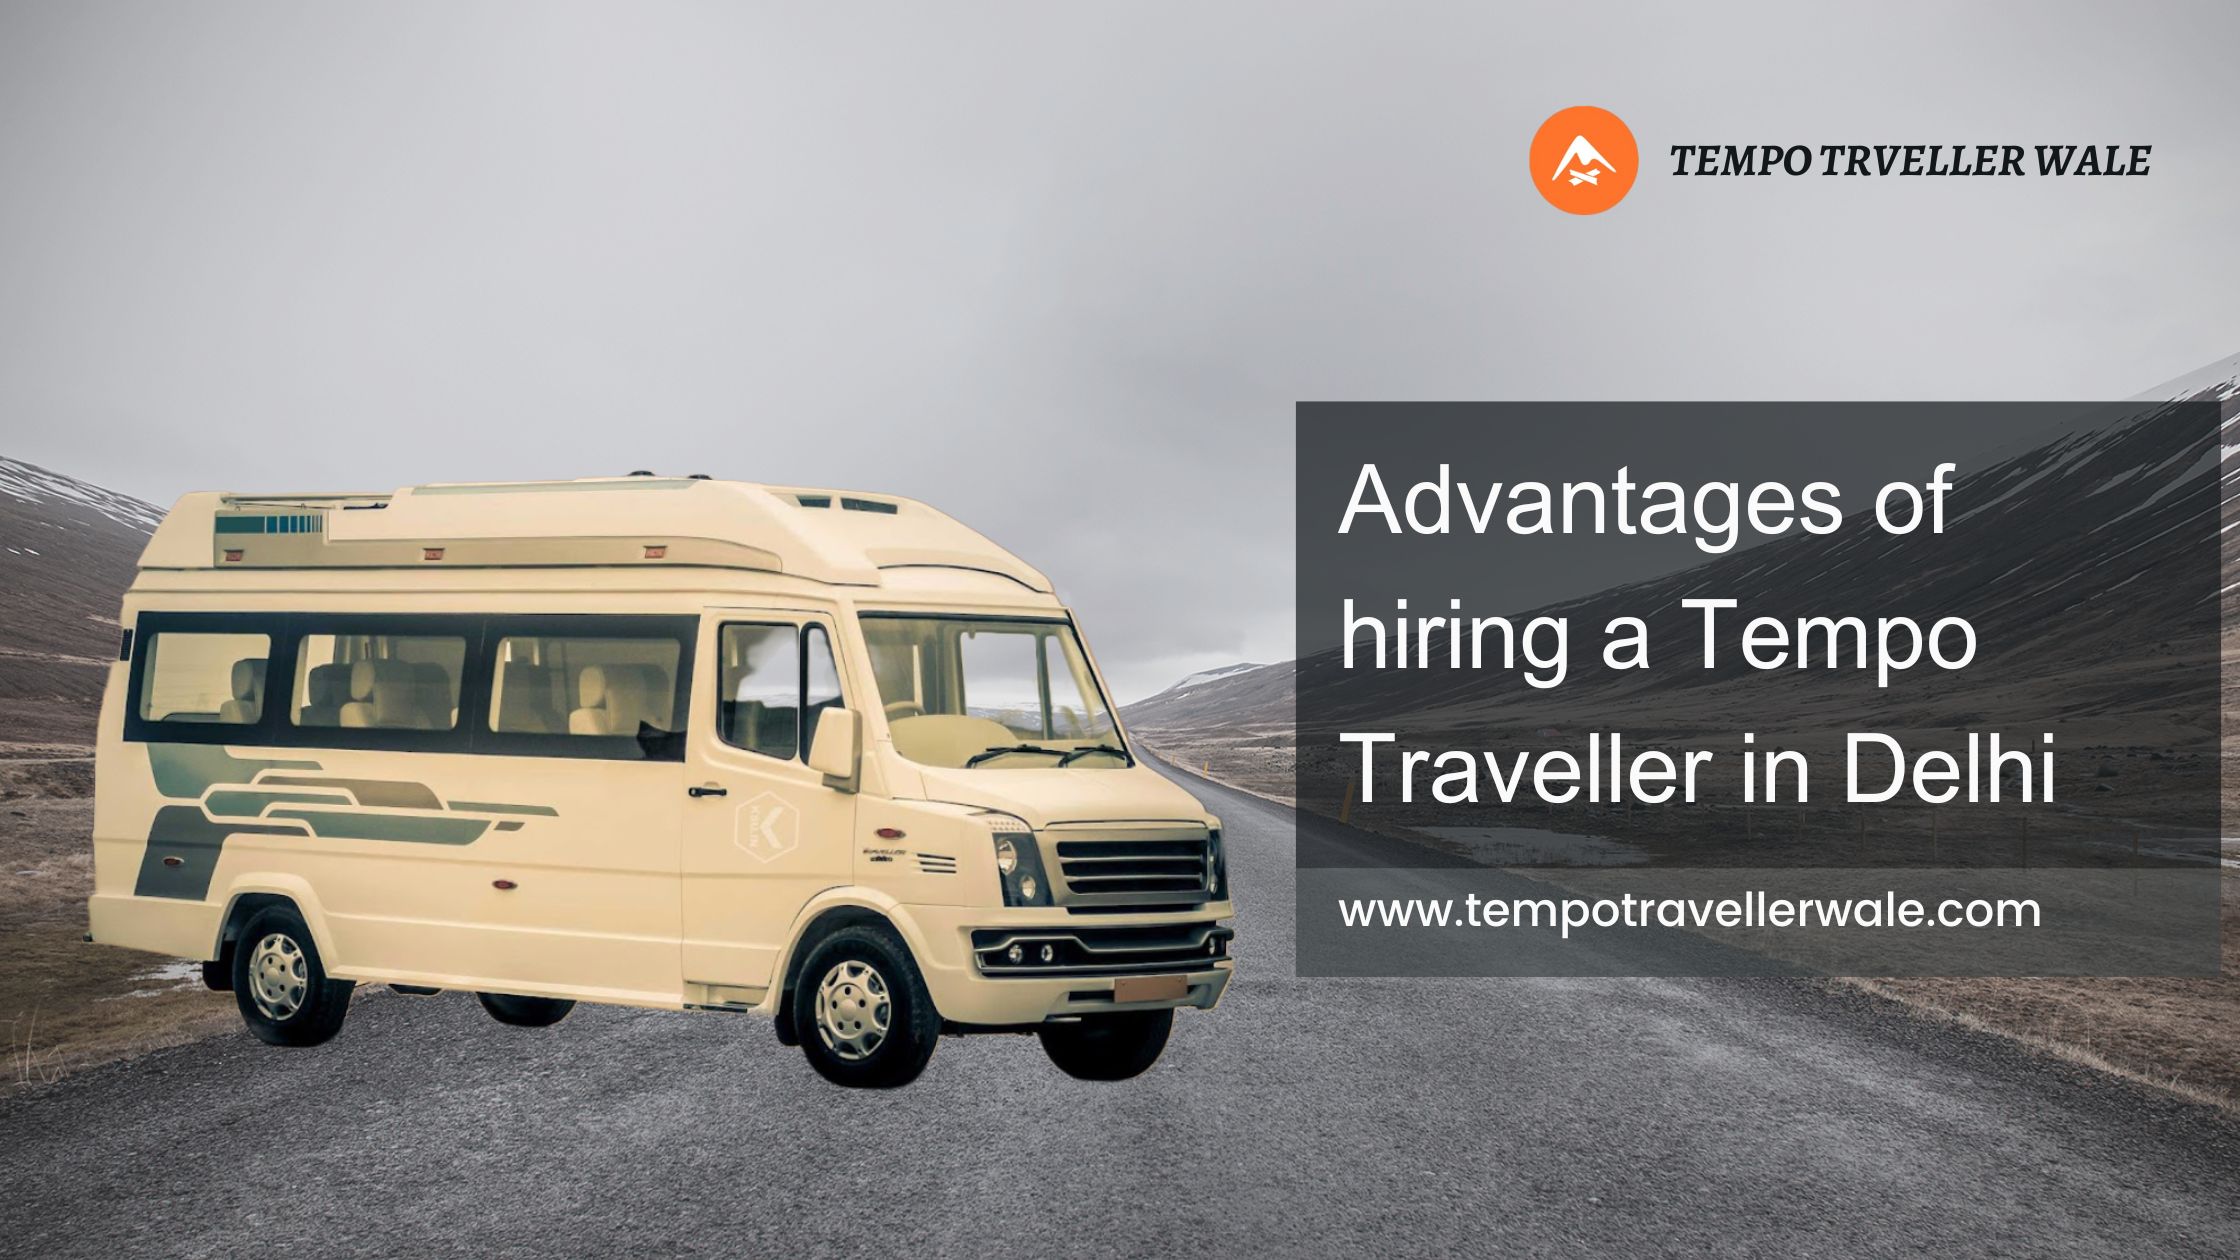 Advantages of hiring a Tempo Traveller in Delhi